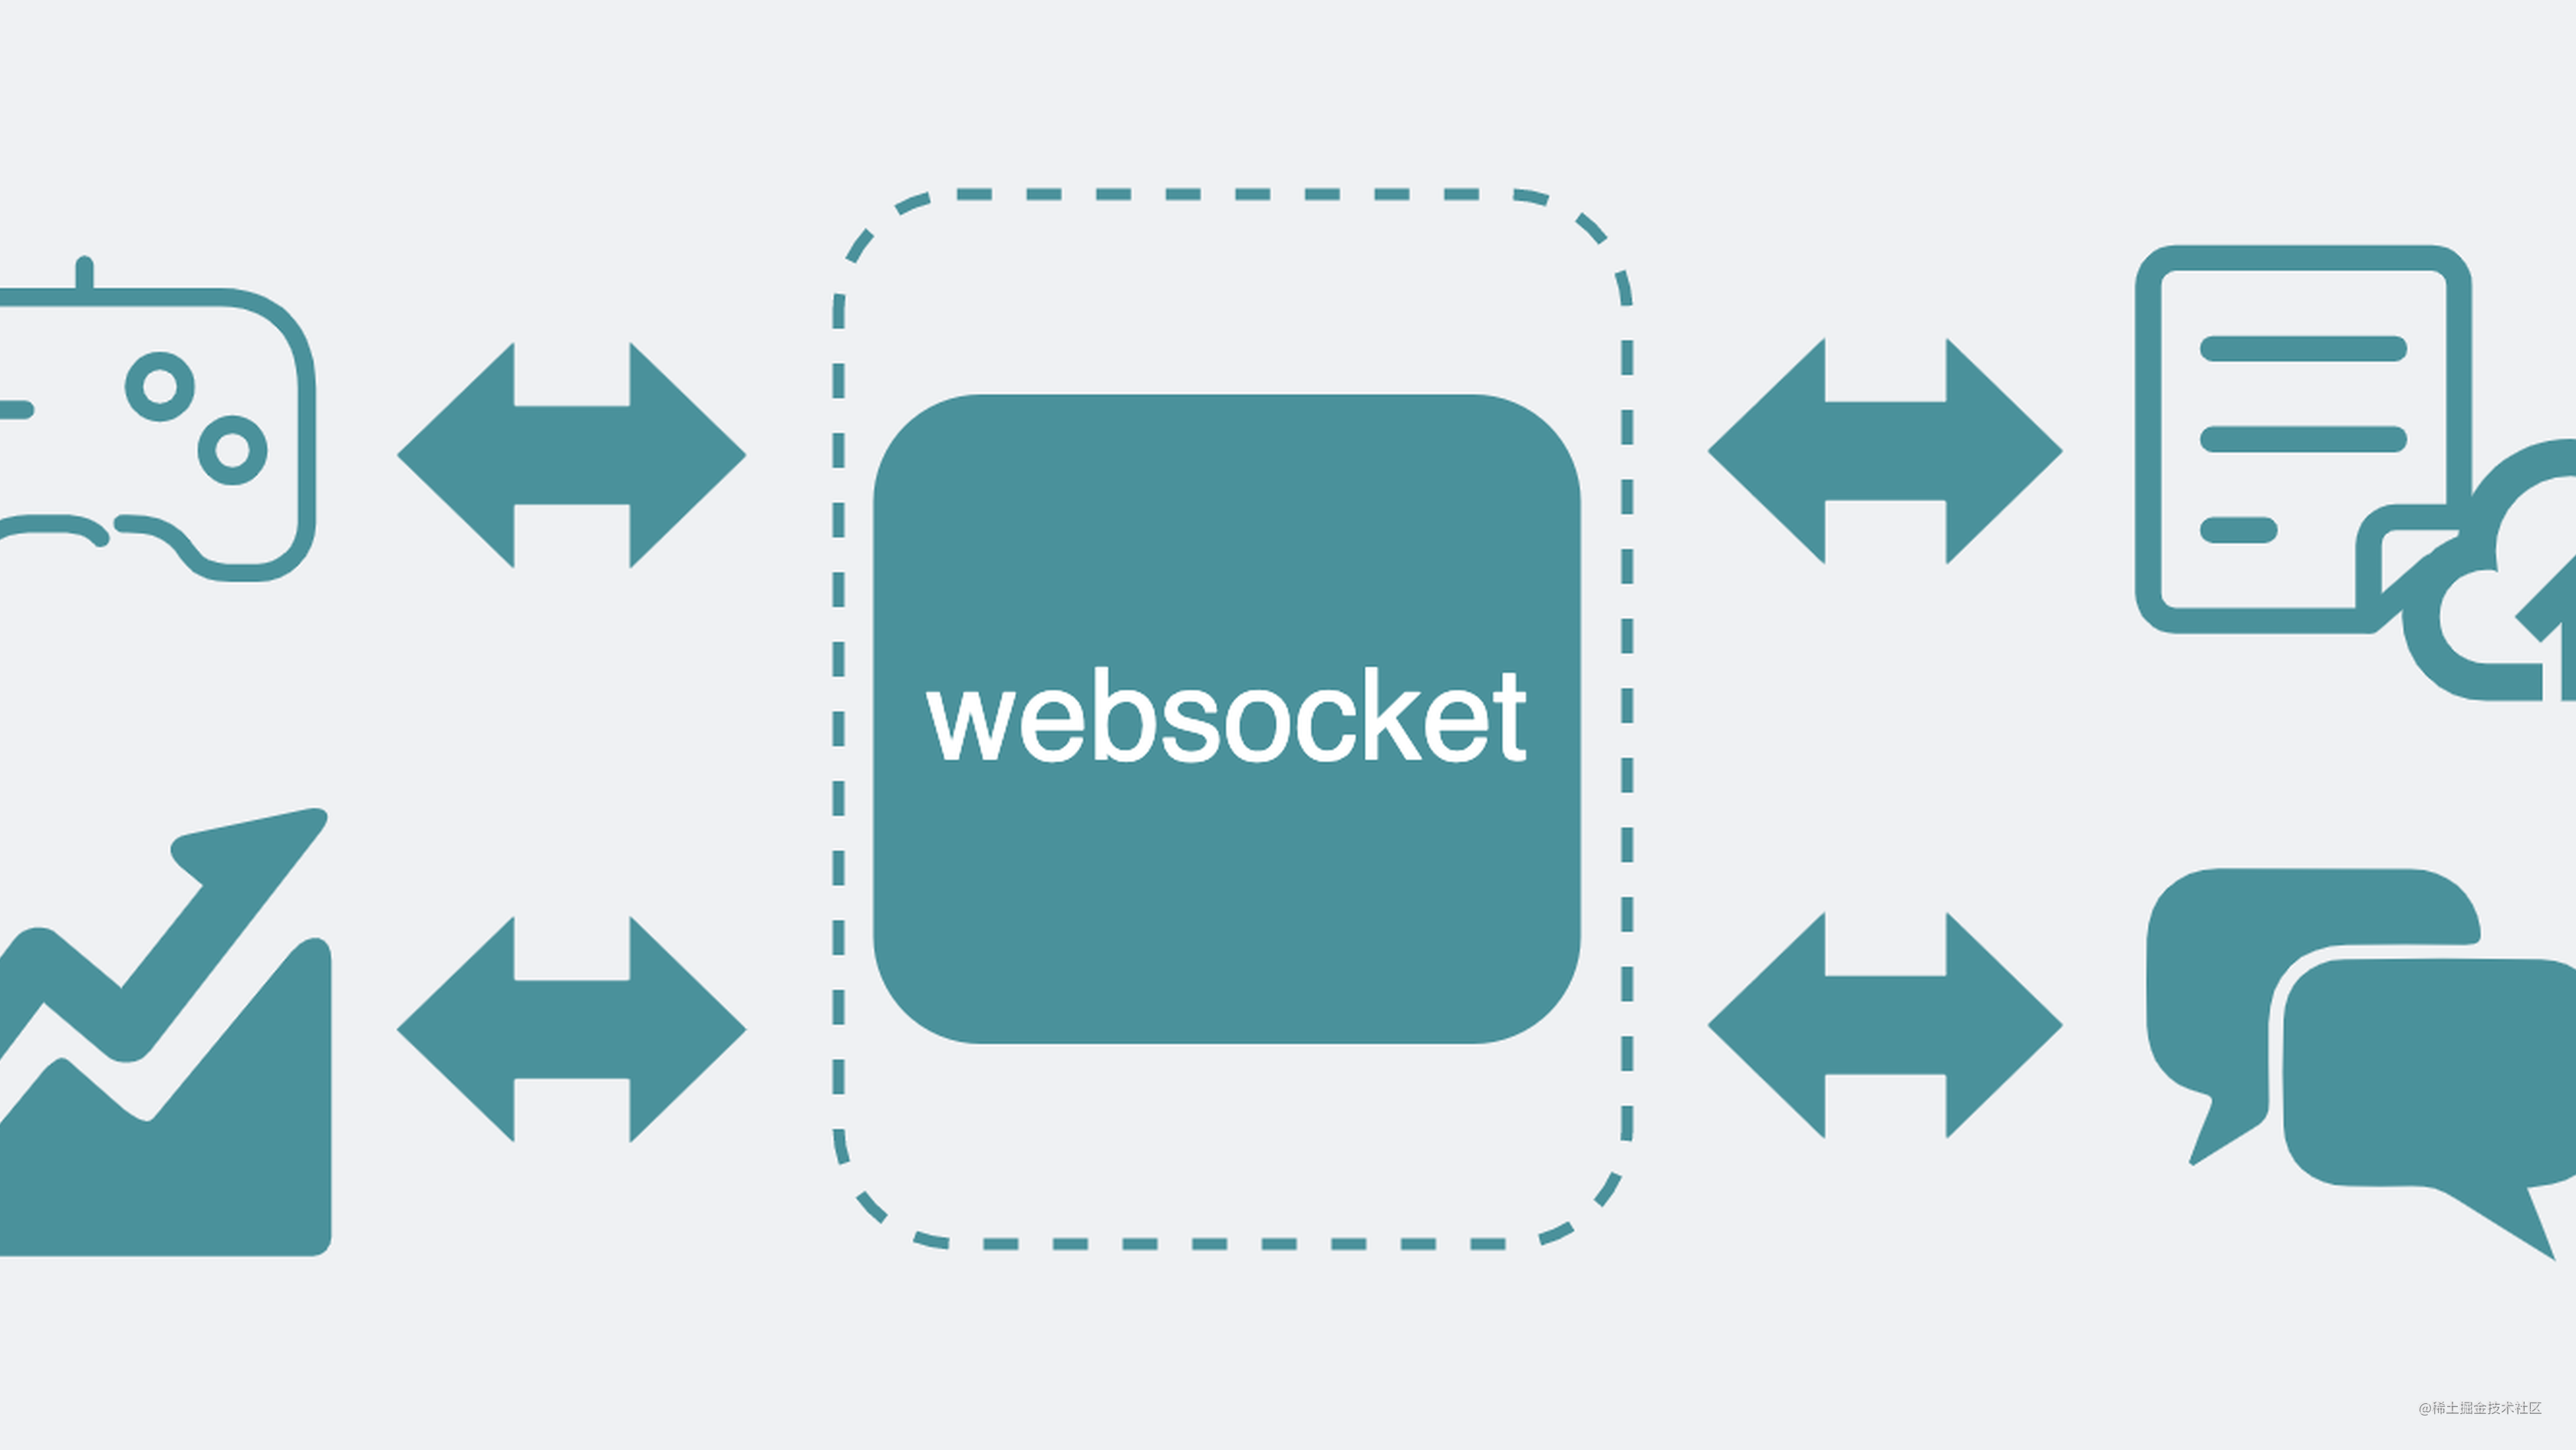 为什么有HTTP协议，还要有websocket协议？